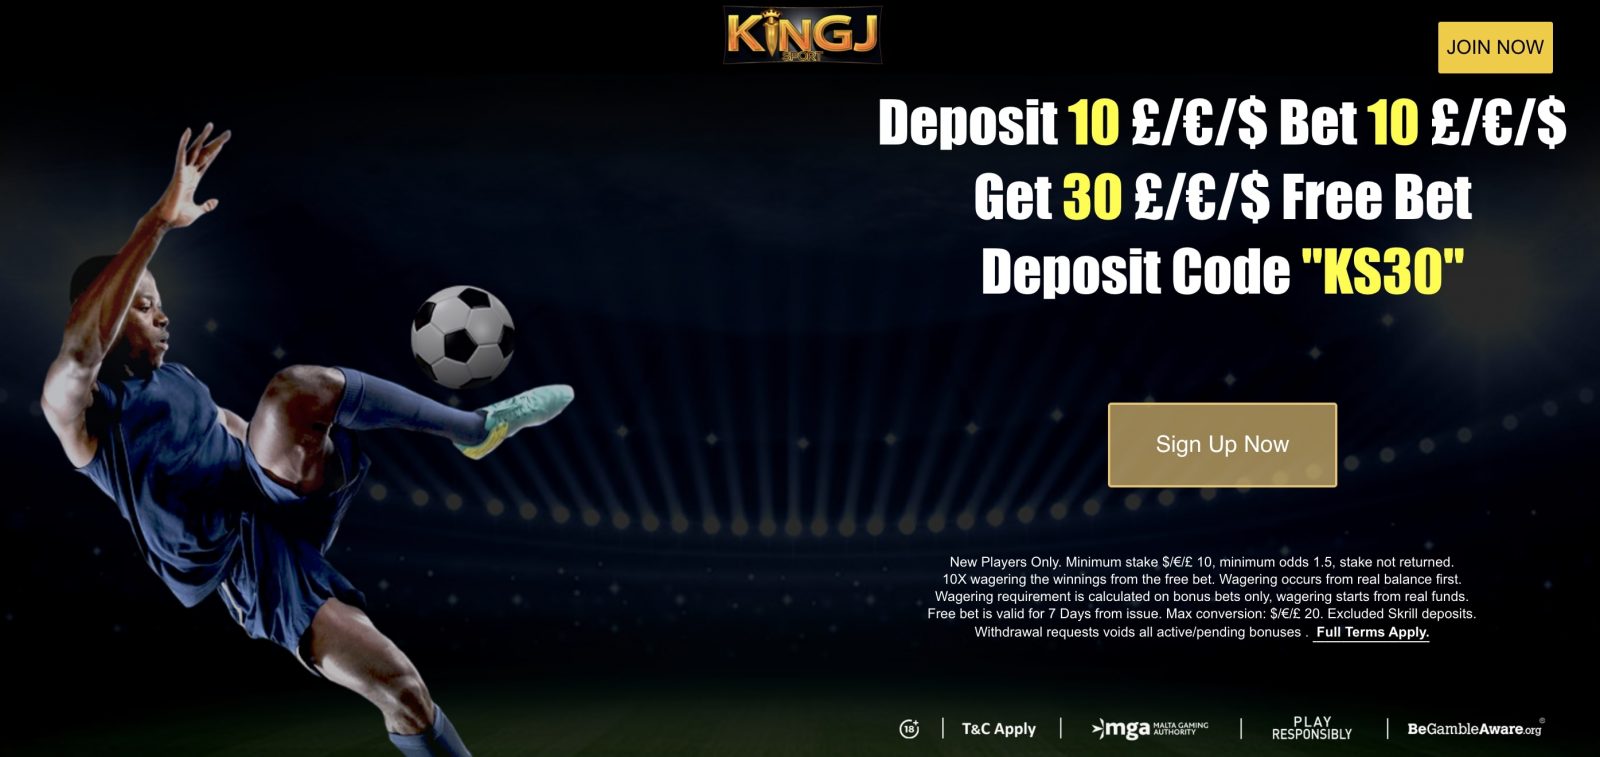 KingJ-opening-offer